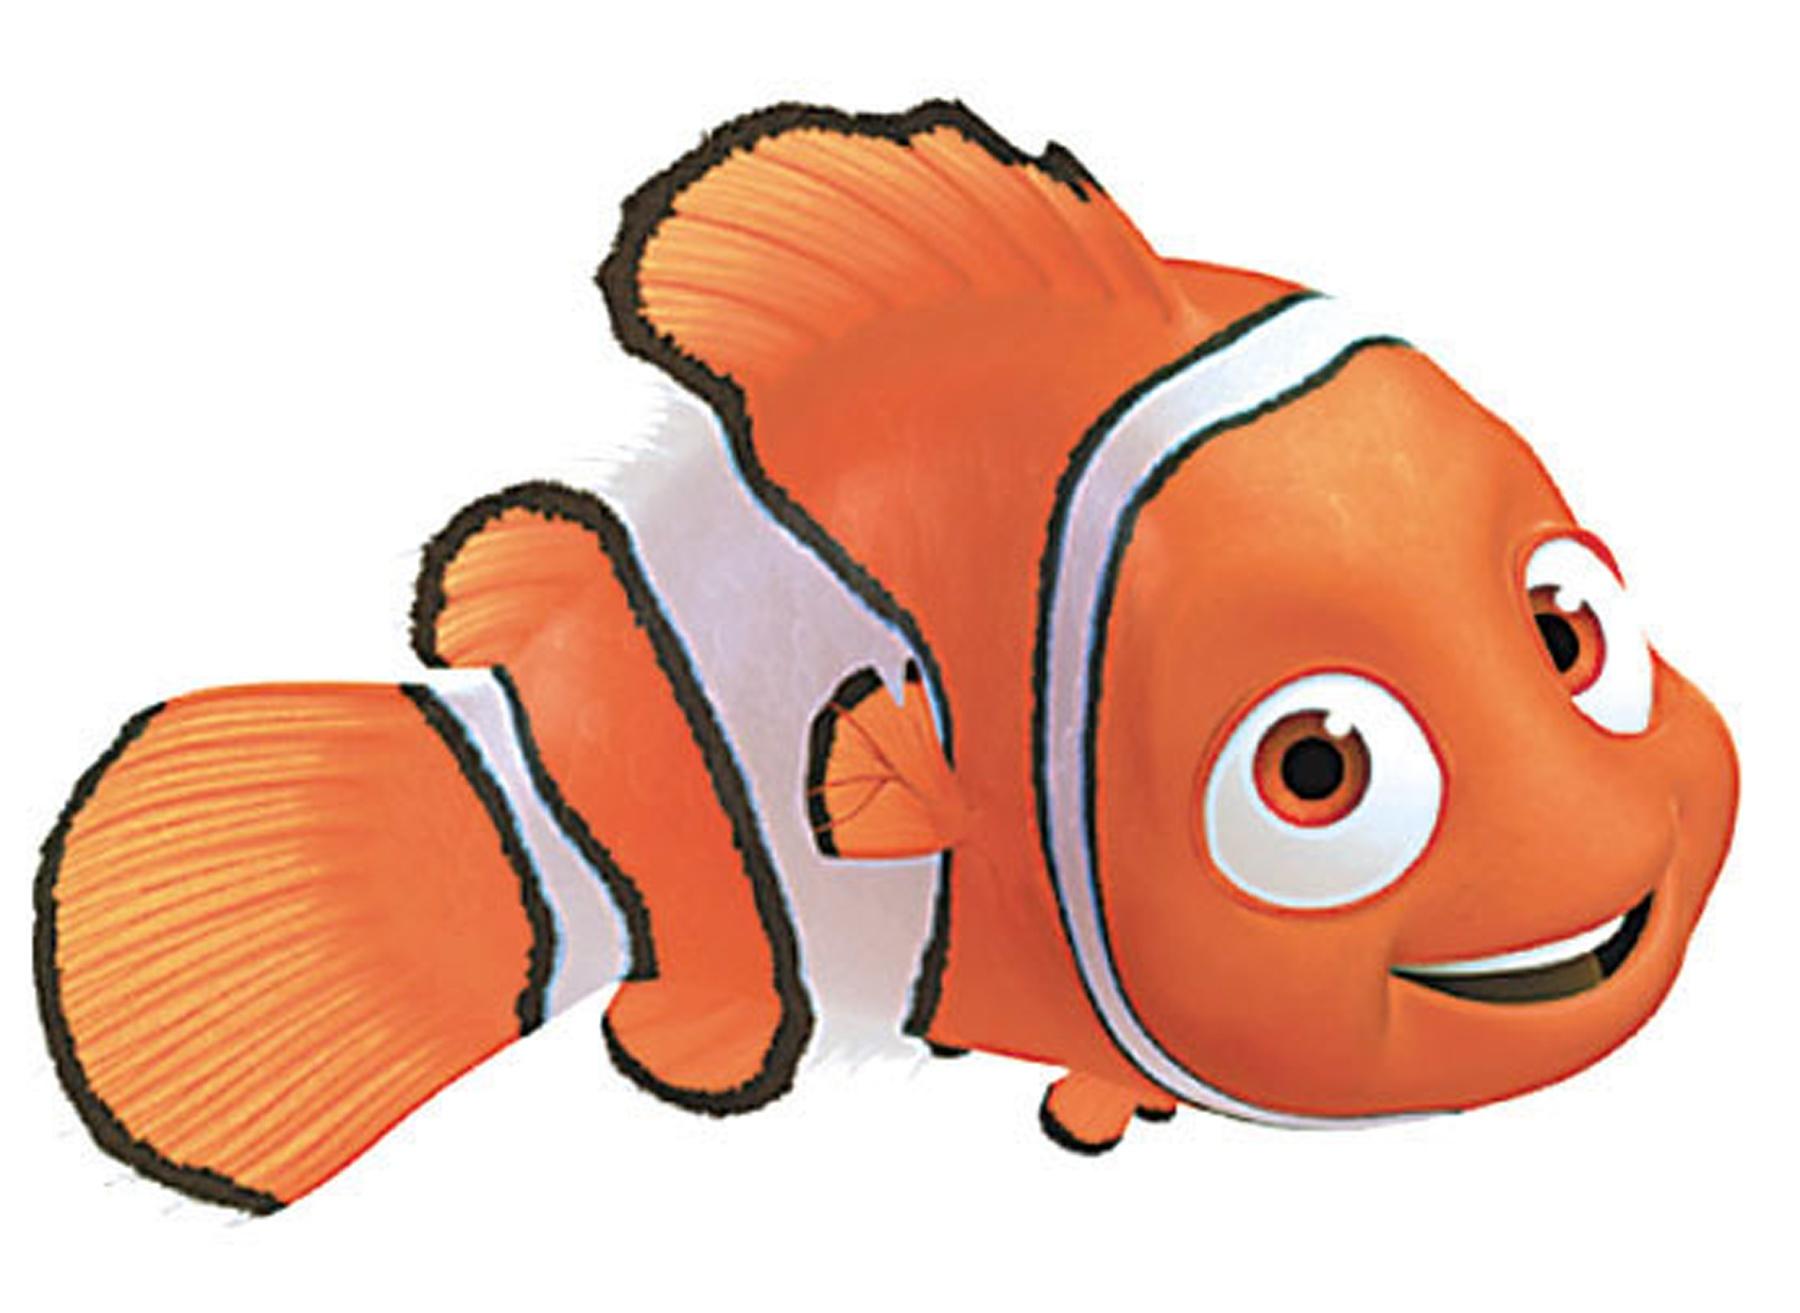 Nemo Cartoon - ClipArt Best - ClipArt Best - ClipArt Best